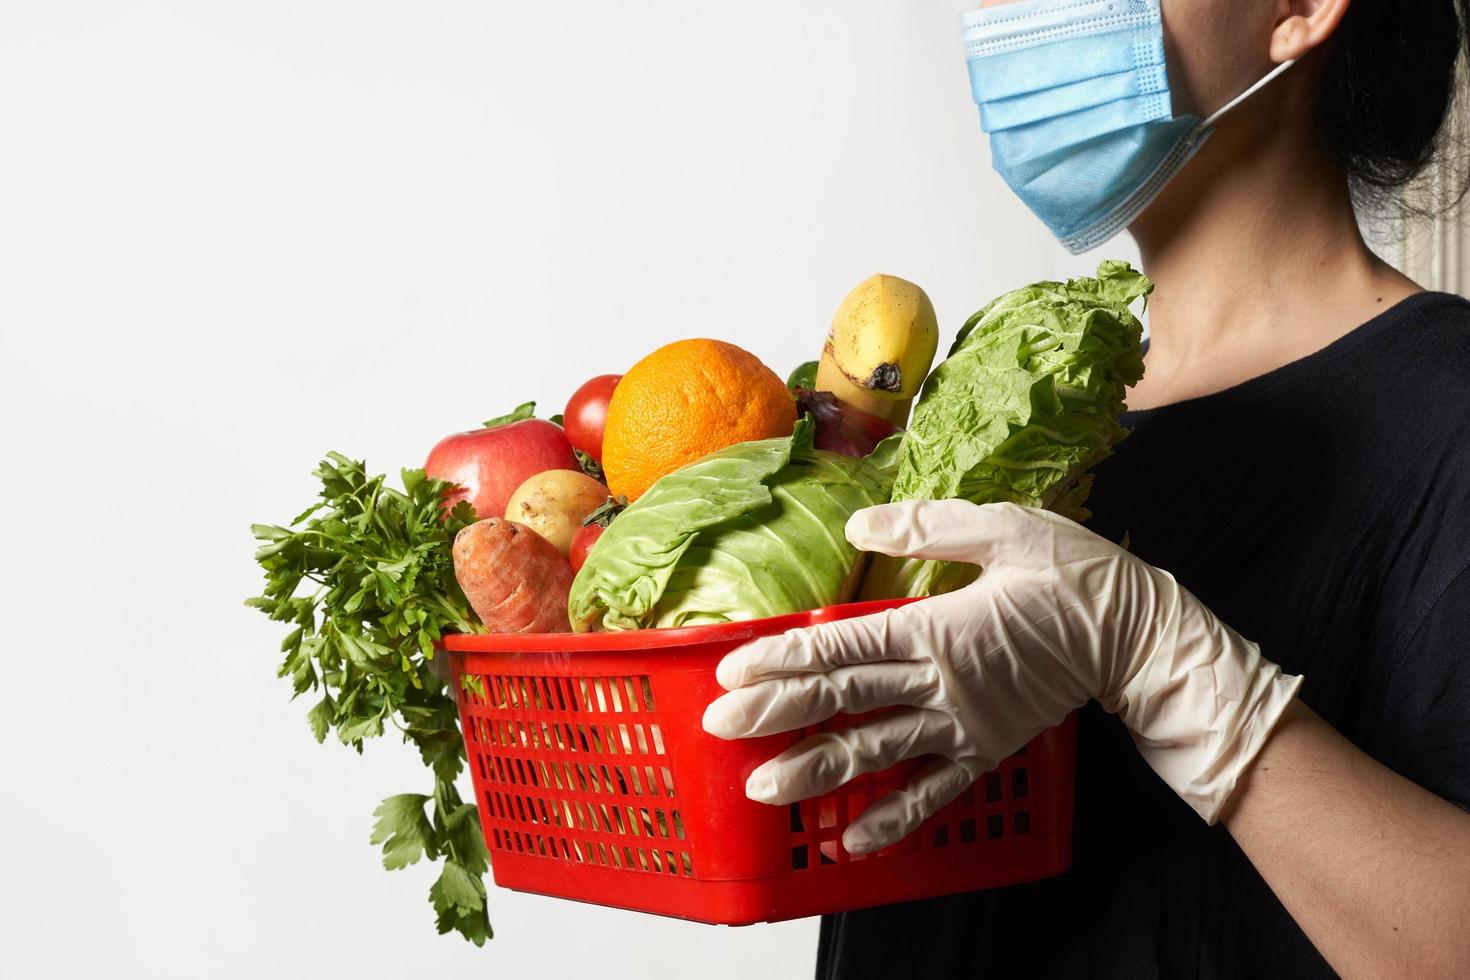 bezorger met gezichtsmasker en medische handschoenen brengt bestelde verse groenten foto